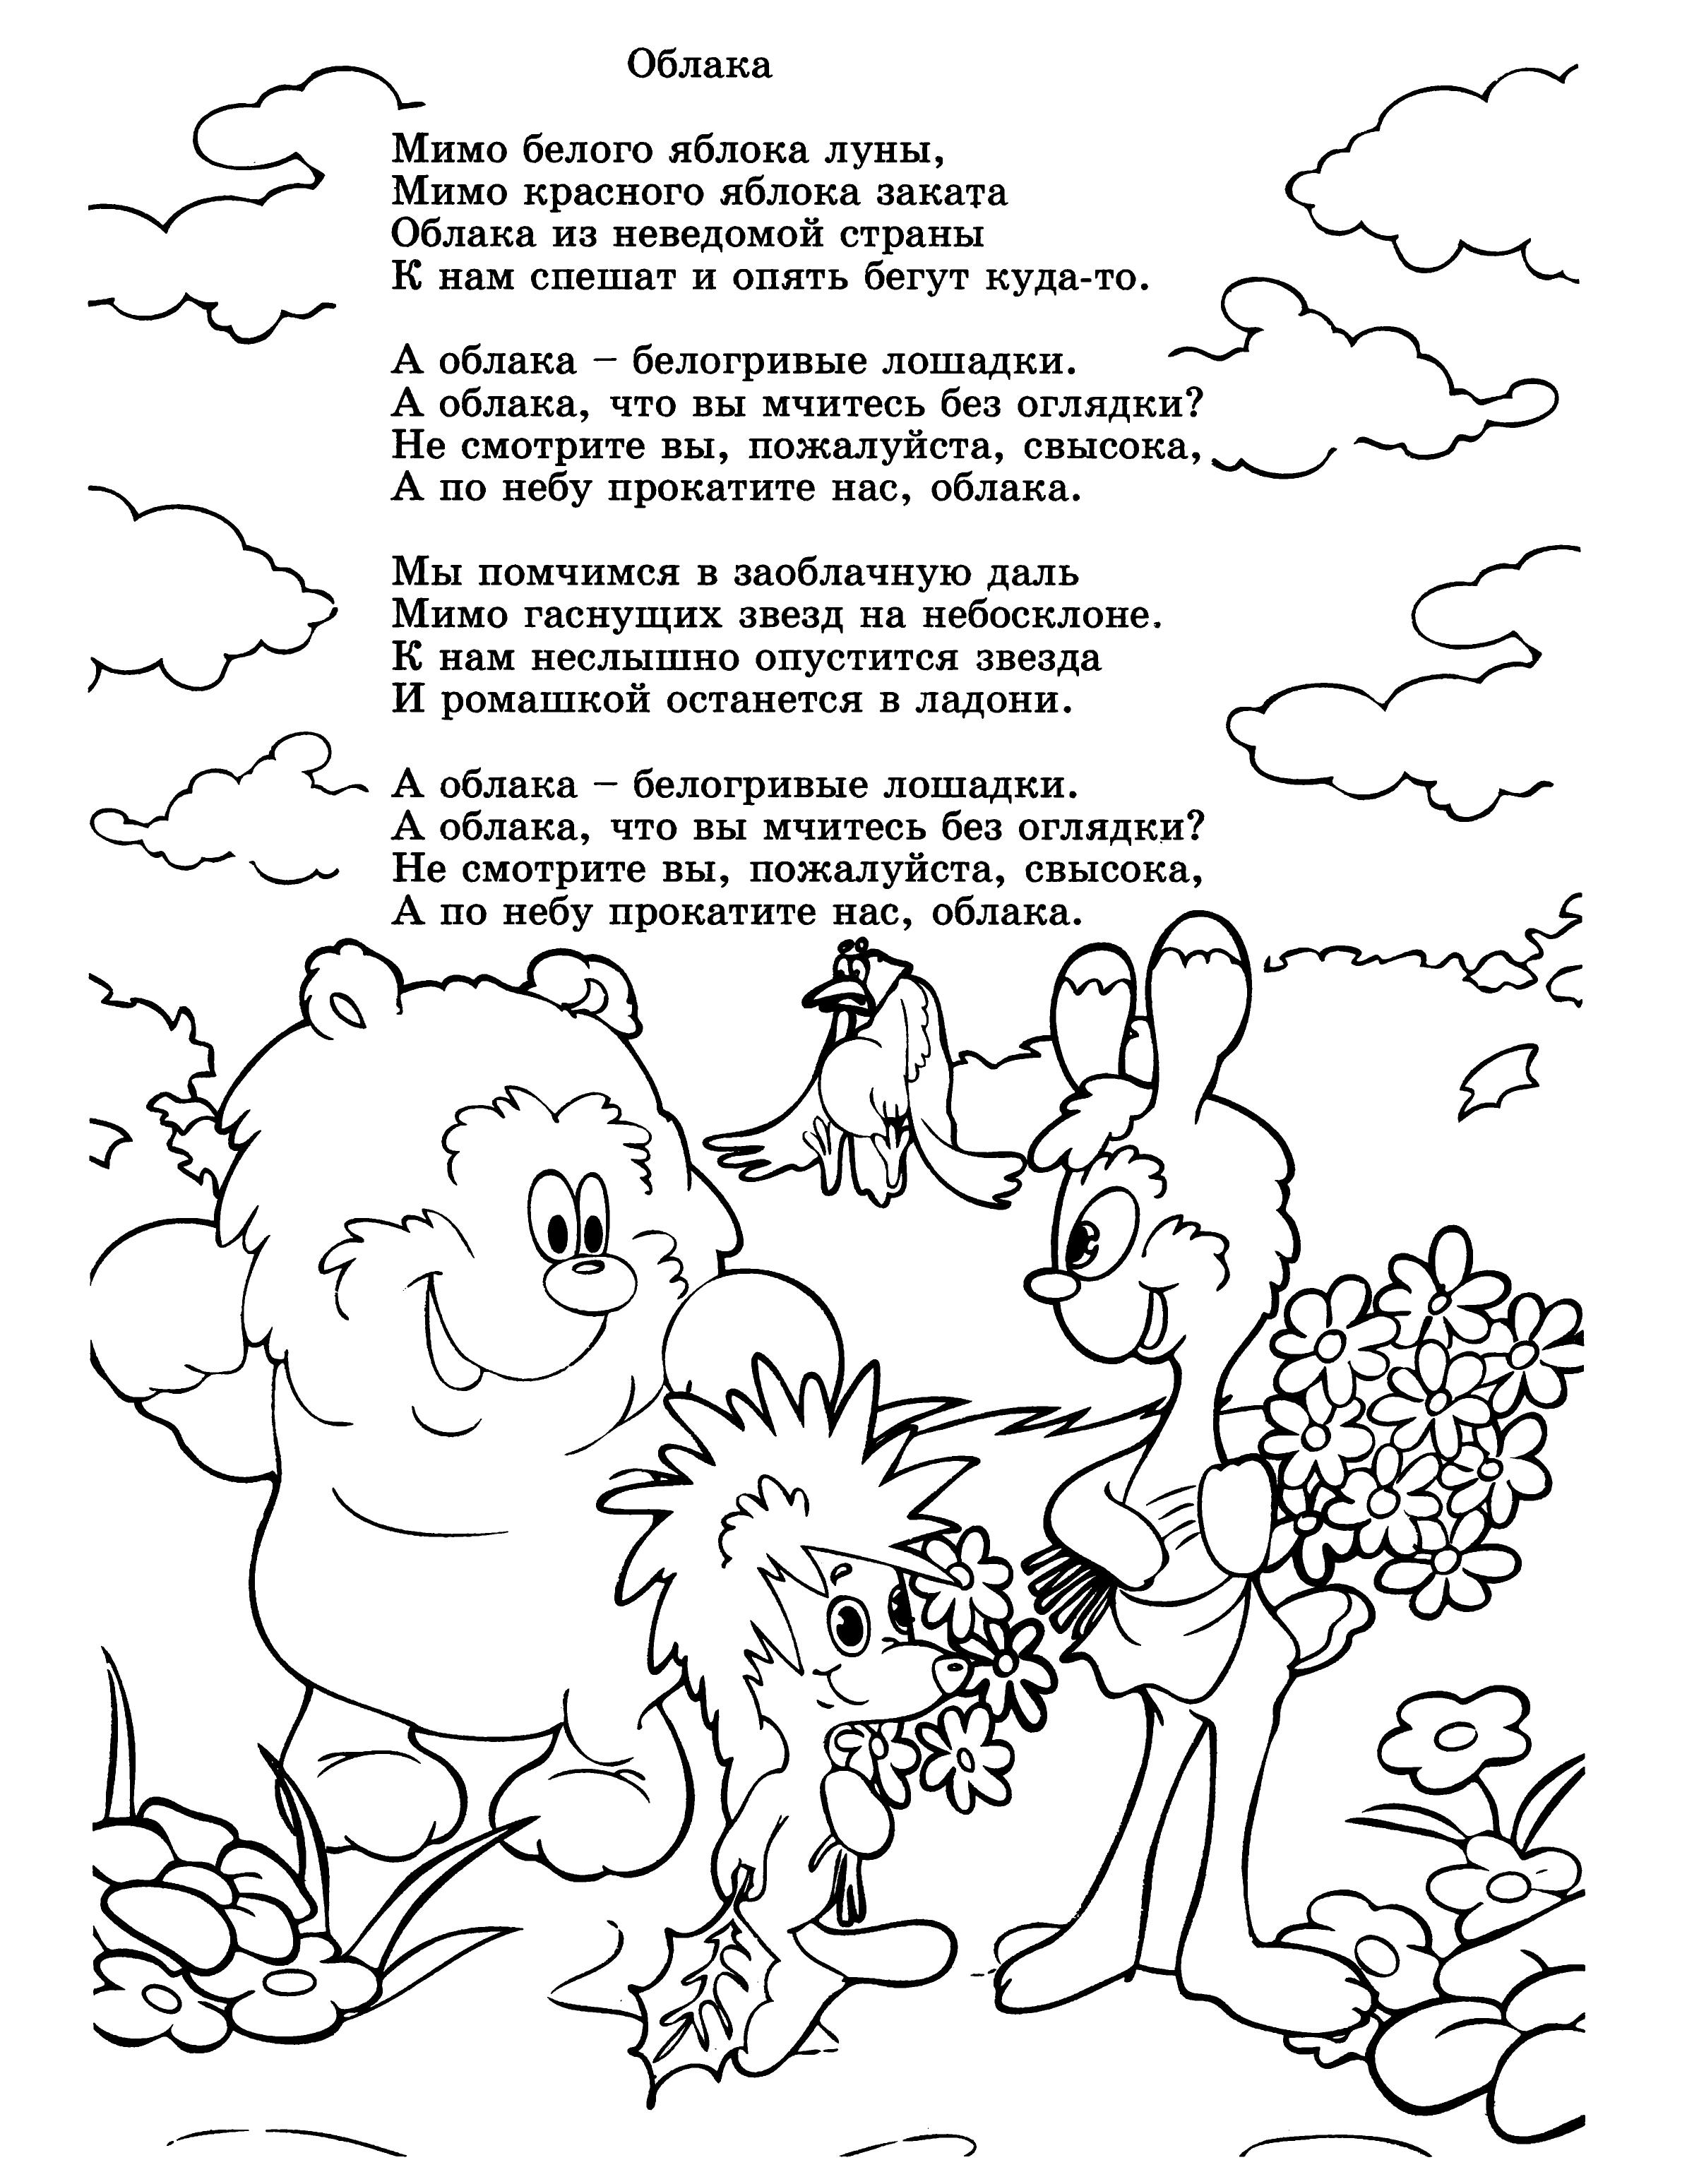 Мимо яблока луны песня. Стихи с раскрасками для детей. Раскраски стихи. Раскраска стишки для детей. Тексты детских песенок с раскраской.